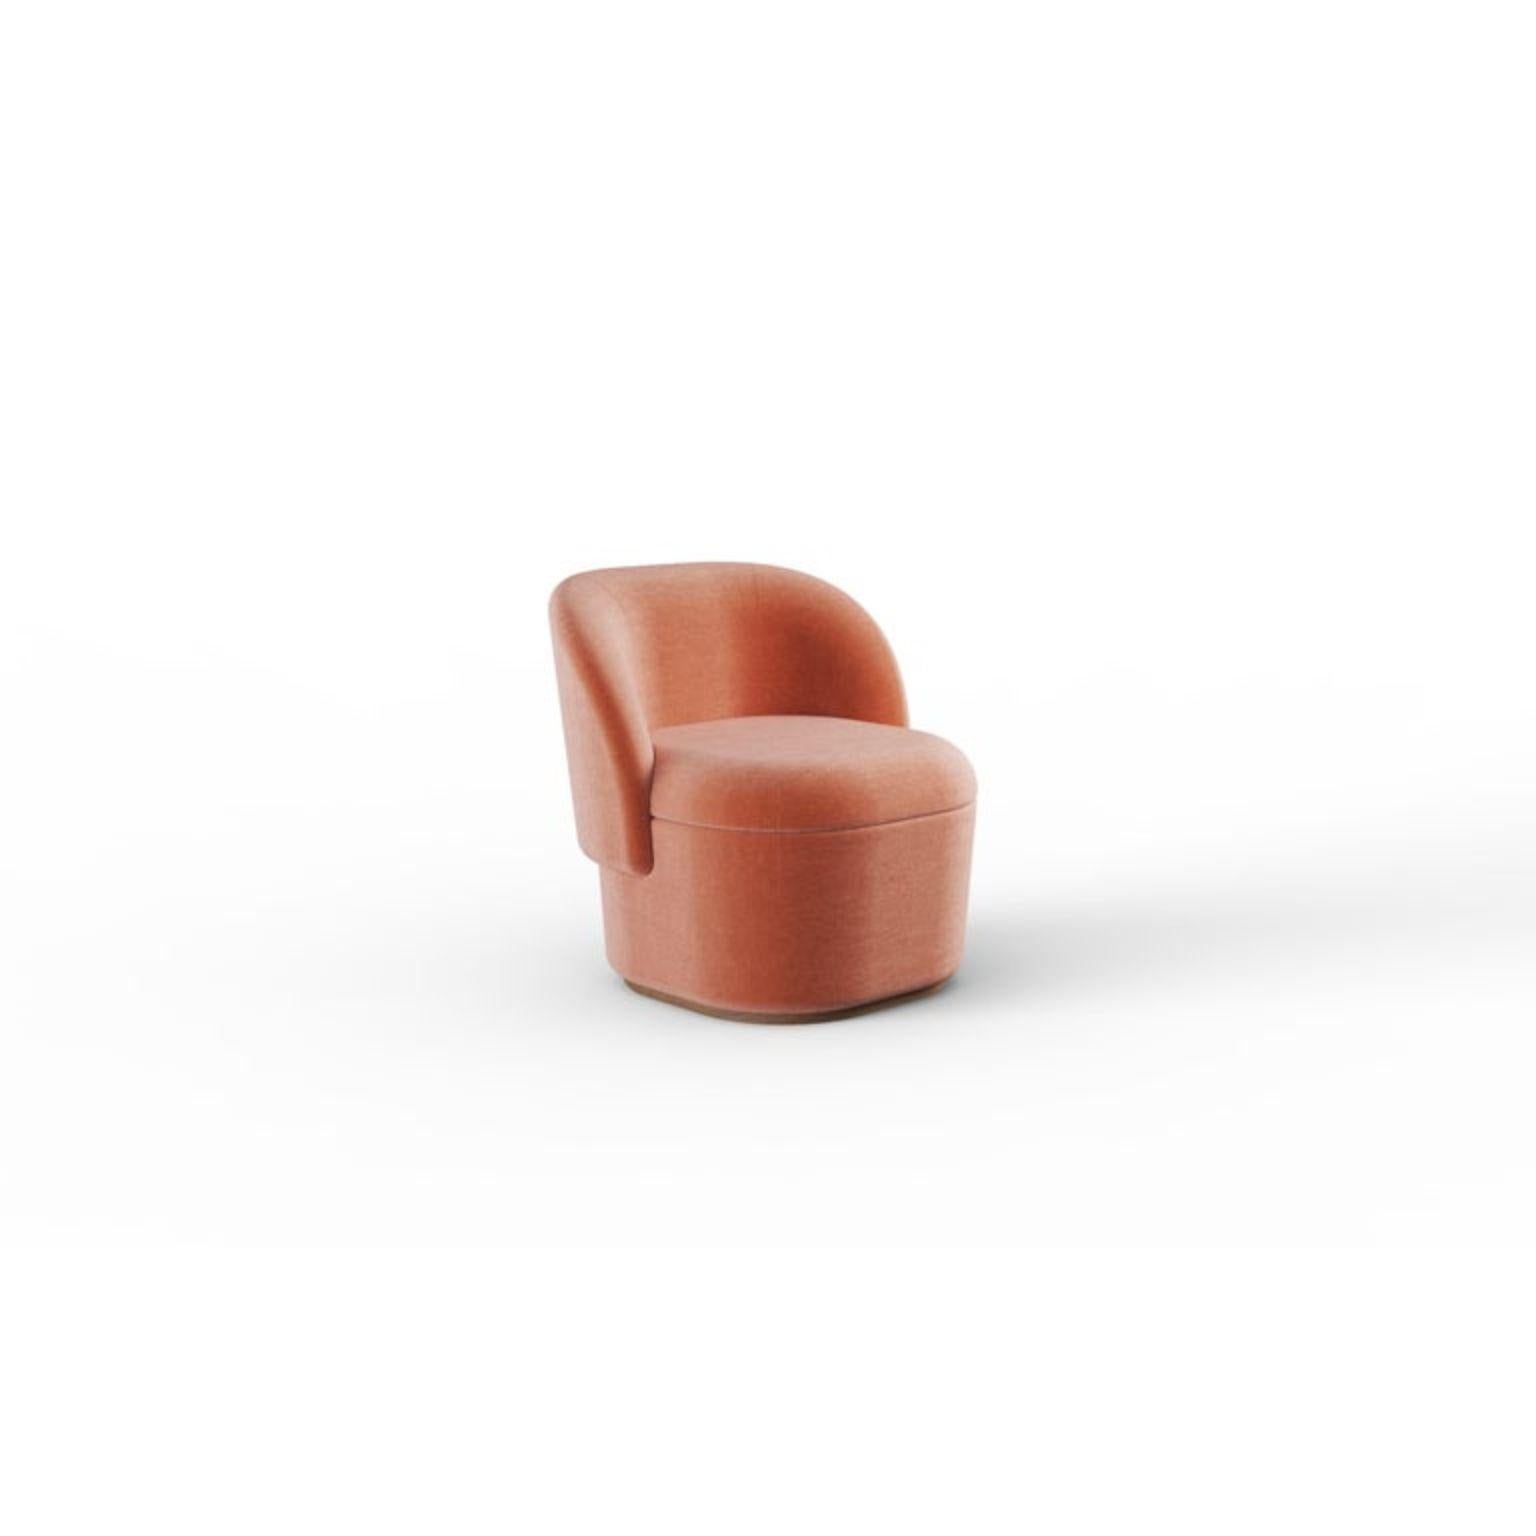 Fauteuil Bisou contemporain
Dimensions : P 70 x L 65 x H 74 cm
Hauteur du siège 44 cm
Matériaux : Tissu, bois massif
Egalement disponible en cuir.  



